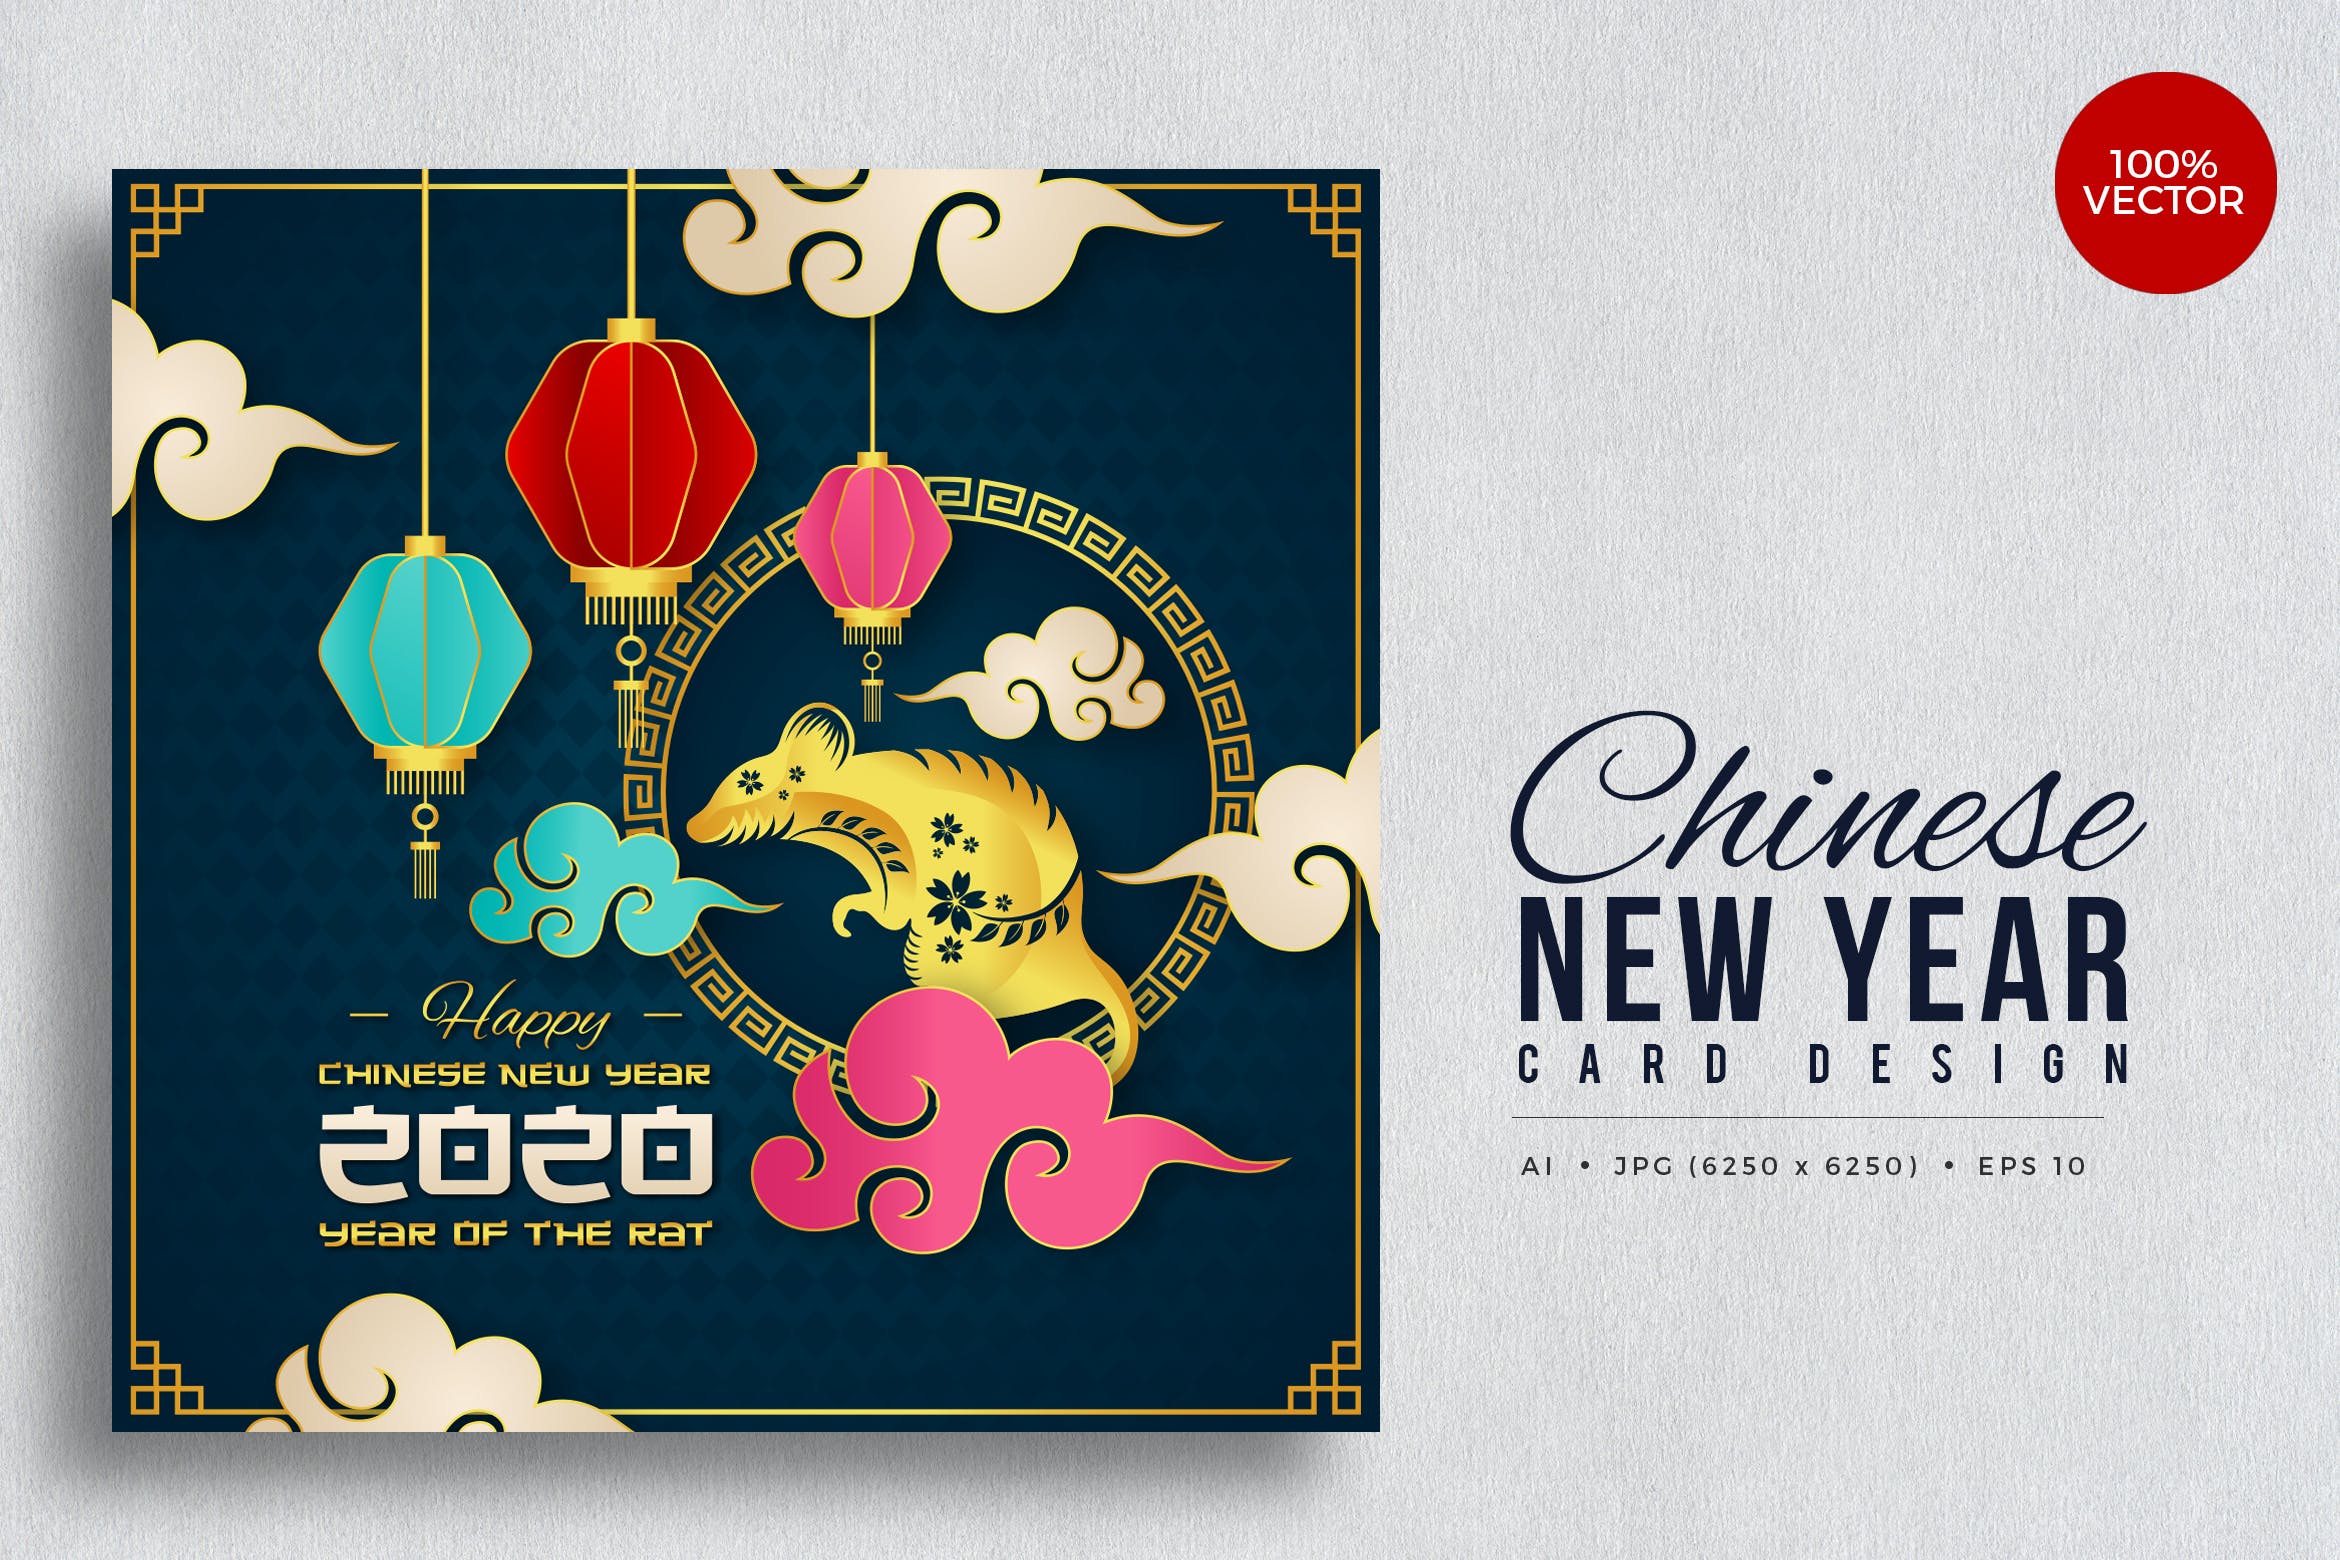 新年贺卡中国农历设计矢量素材v4 Chinese New Year, Rat Year Vector Card Vol.4设计素材模板